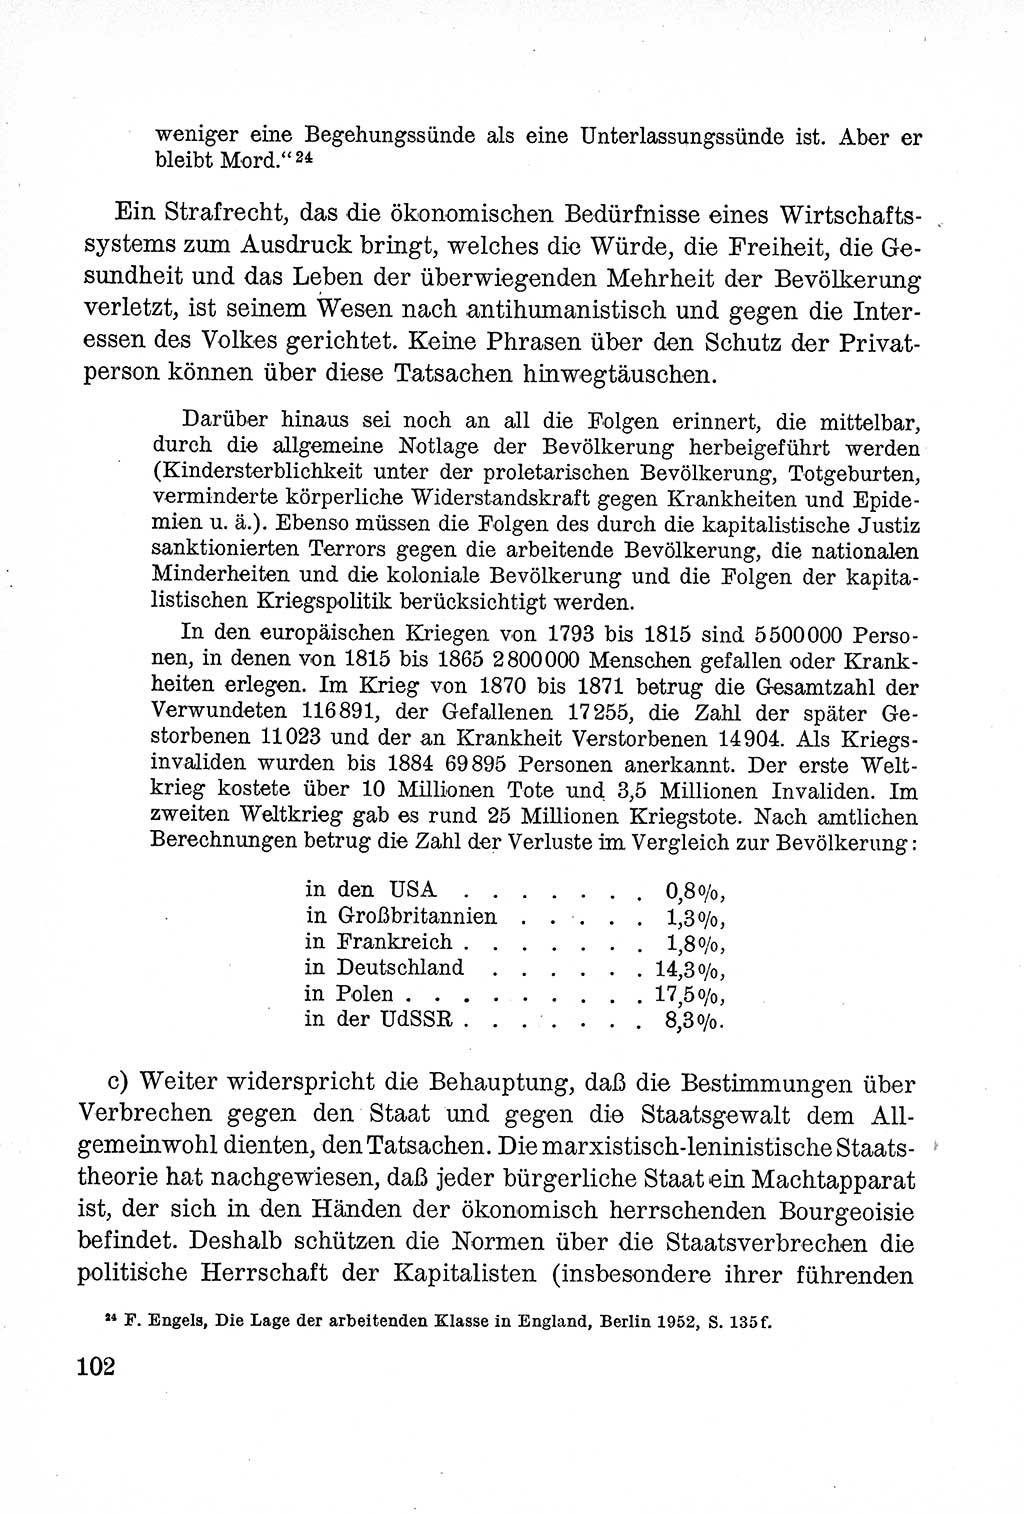 Lehrbuch des Strafrechts der Deutschen Demokratischen Republik (DDR), Allgemeiner Teil 1957, Seite 102 (Lb. Strafr. DDR AT 1957, S. 102)